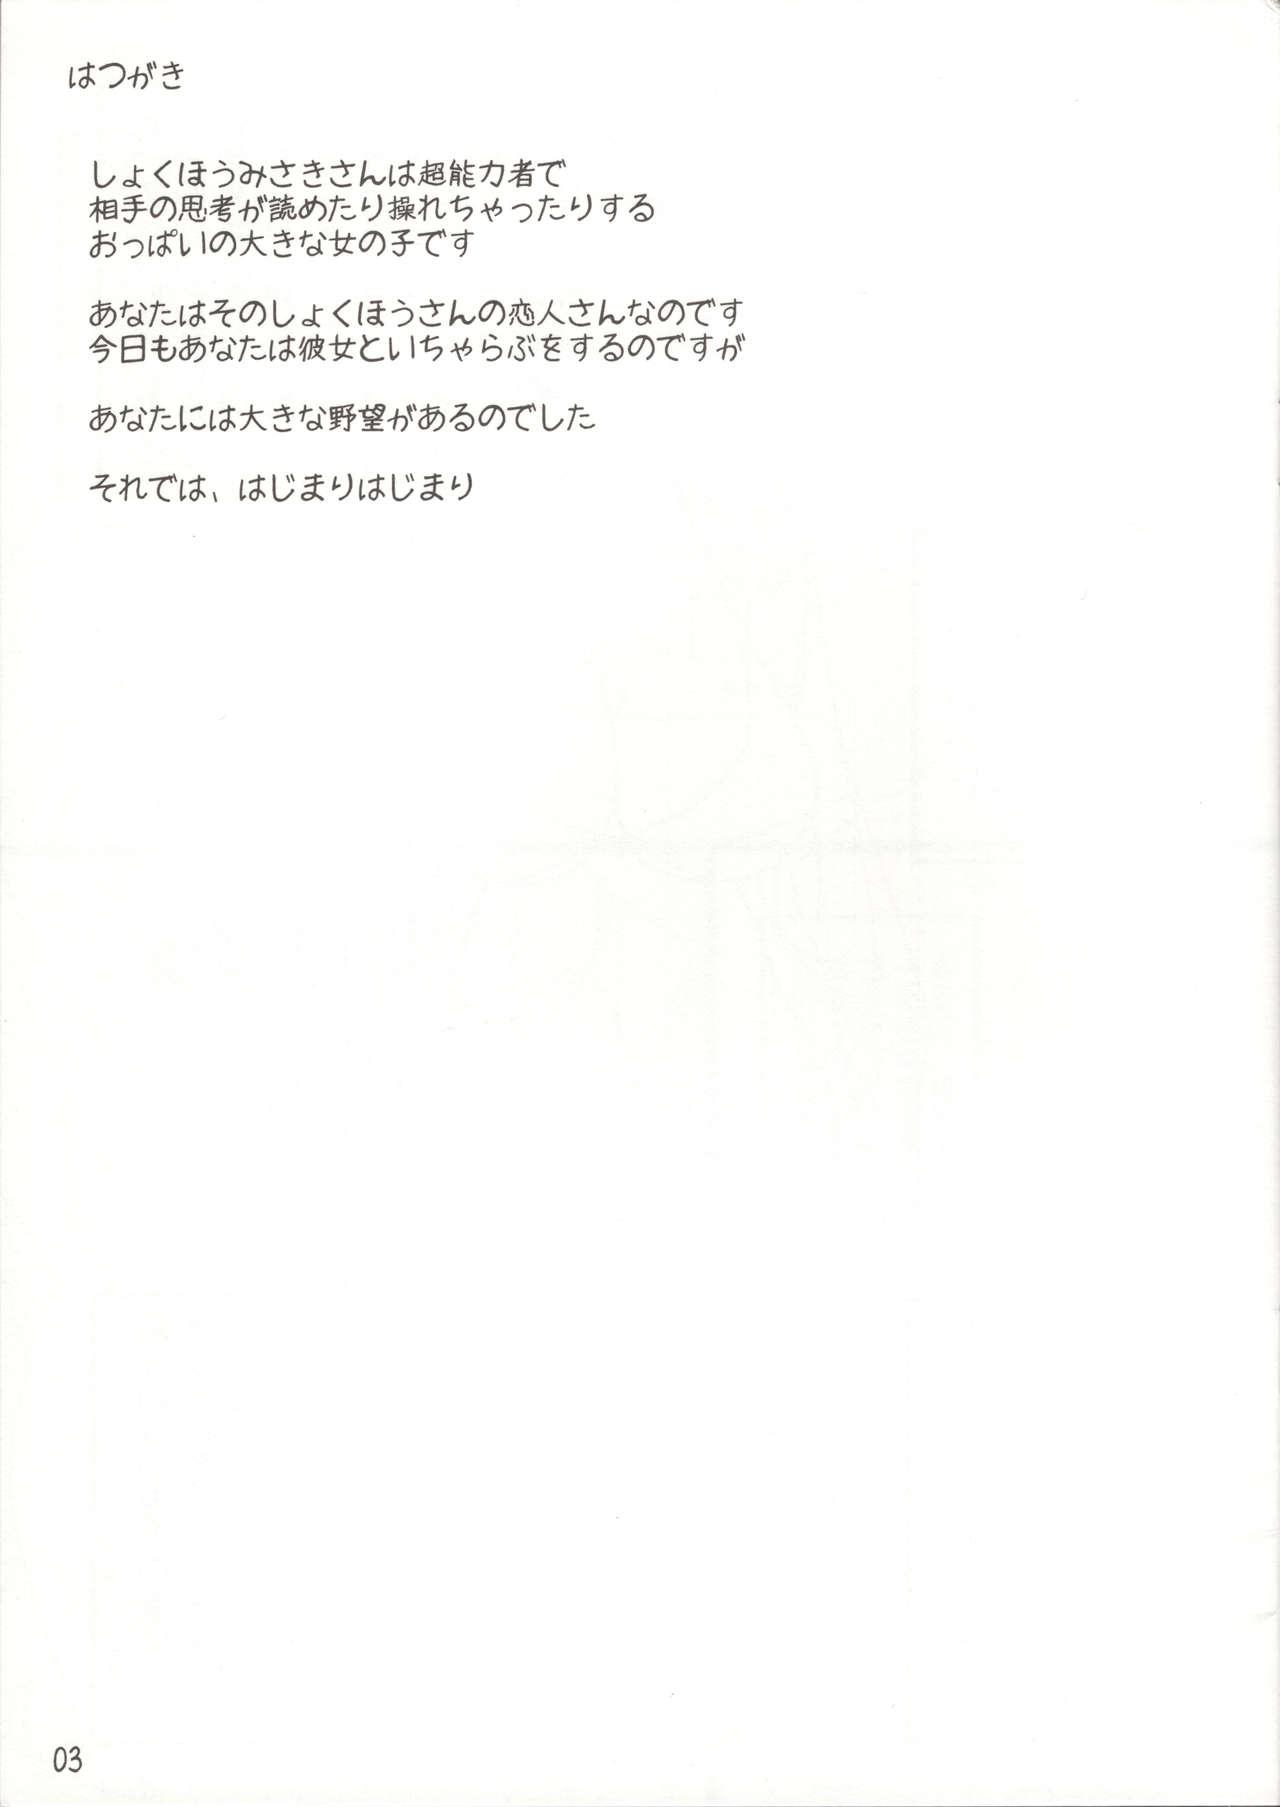 Amateurs Misaki chito issho! - Toaru kagaku no railgun Cougar - Page 2